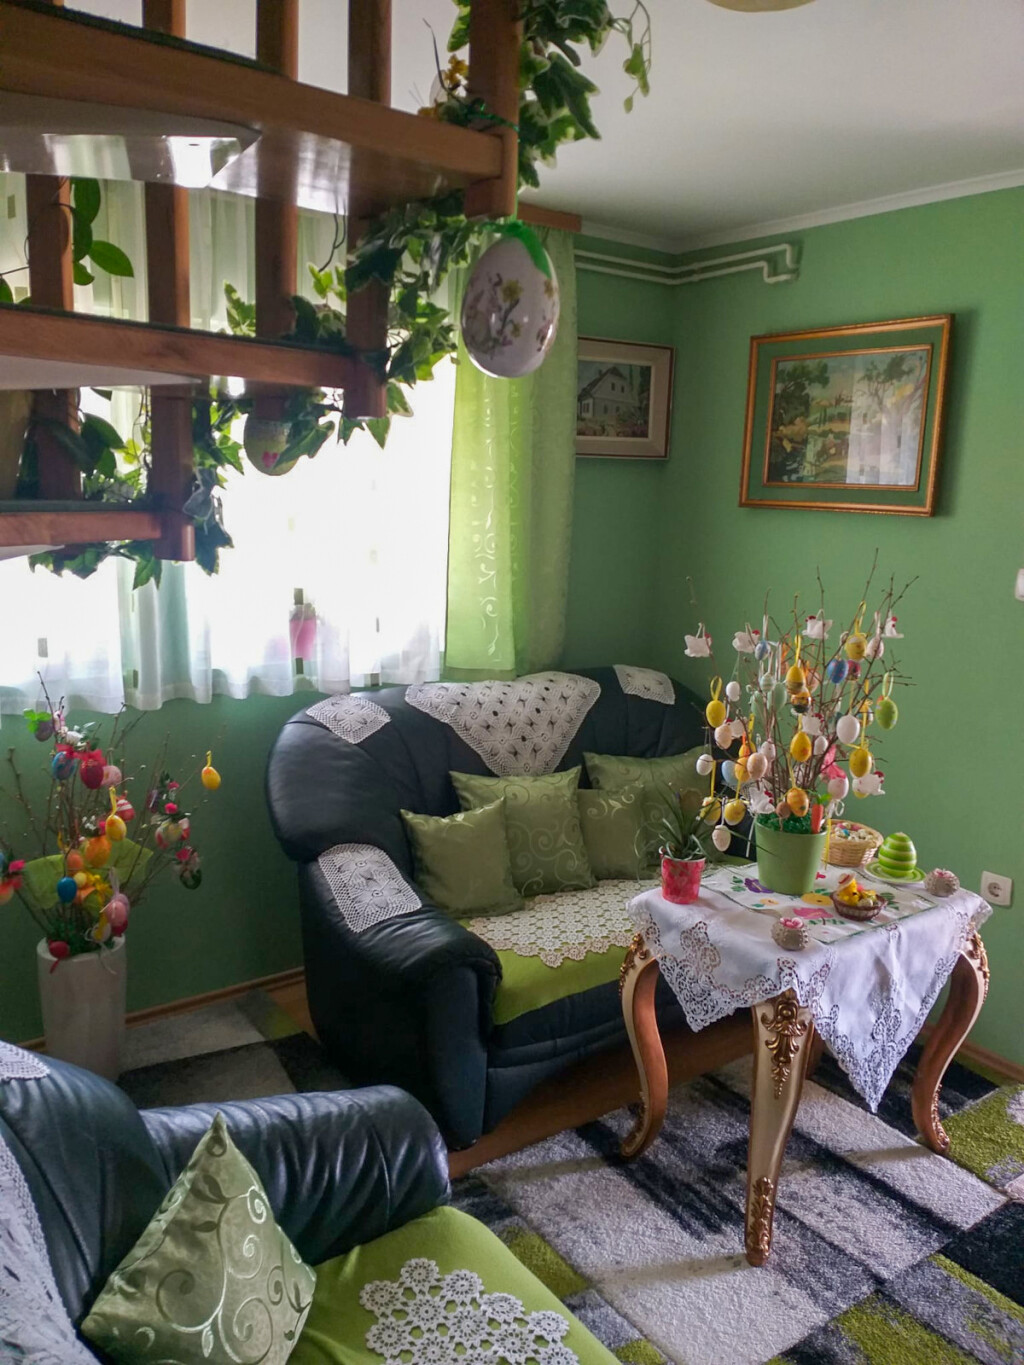 Kuća 85-godišnje bake Mici iz Čabra izgleda kao iz slikovnice - 2